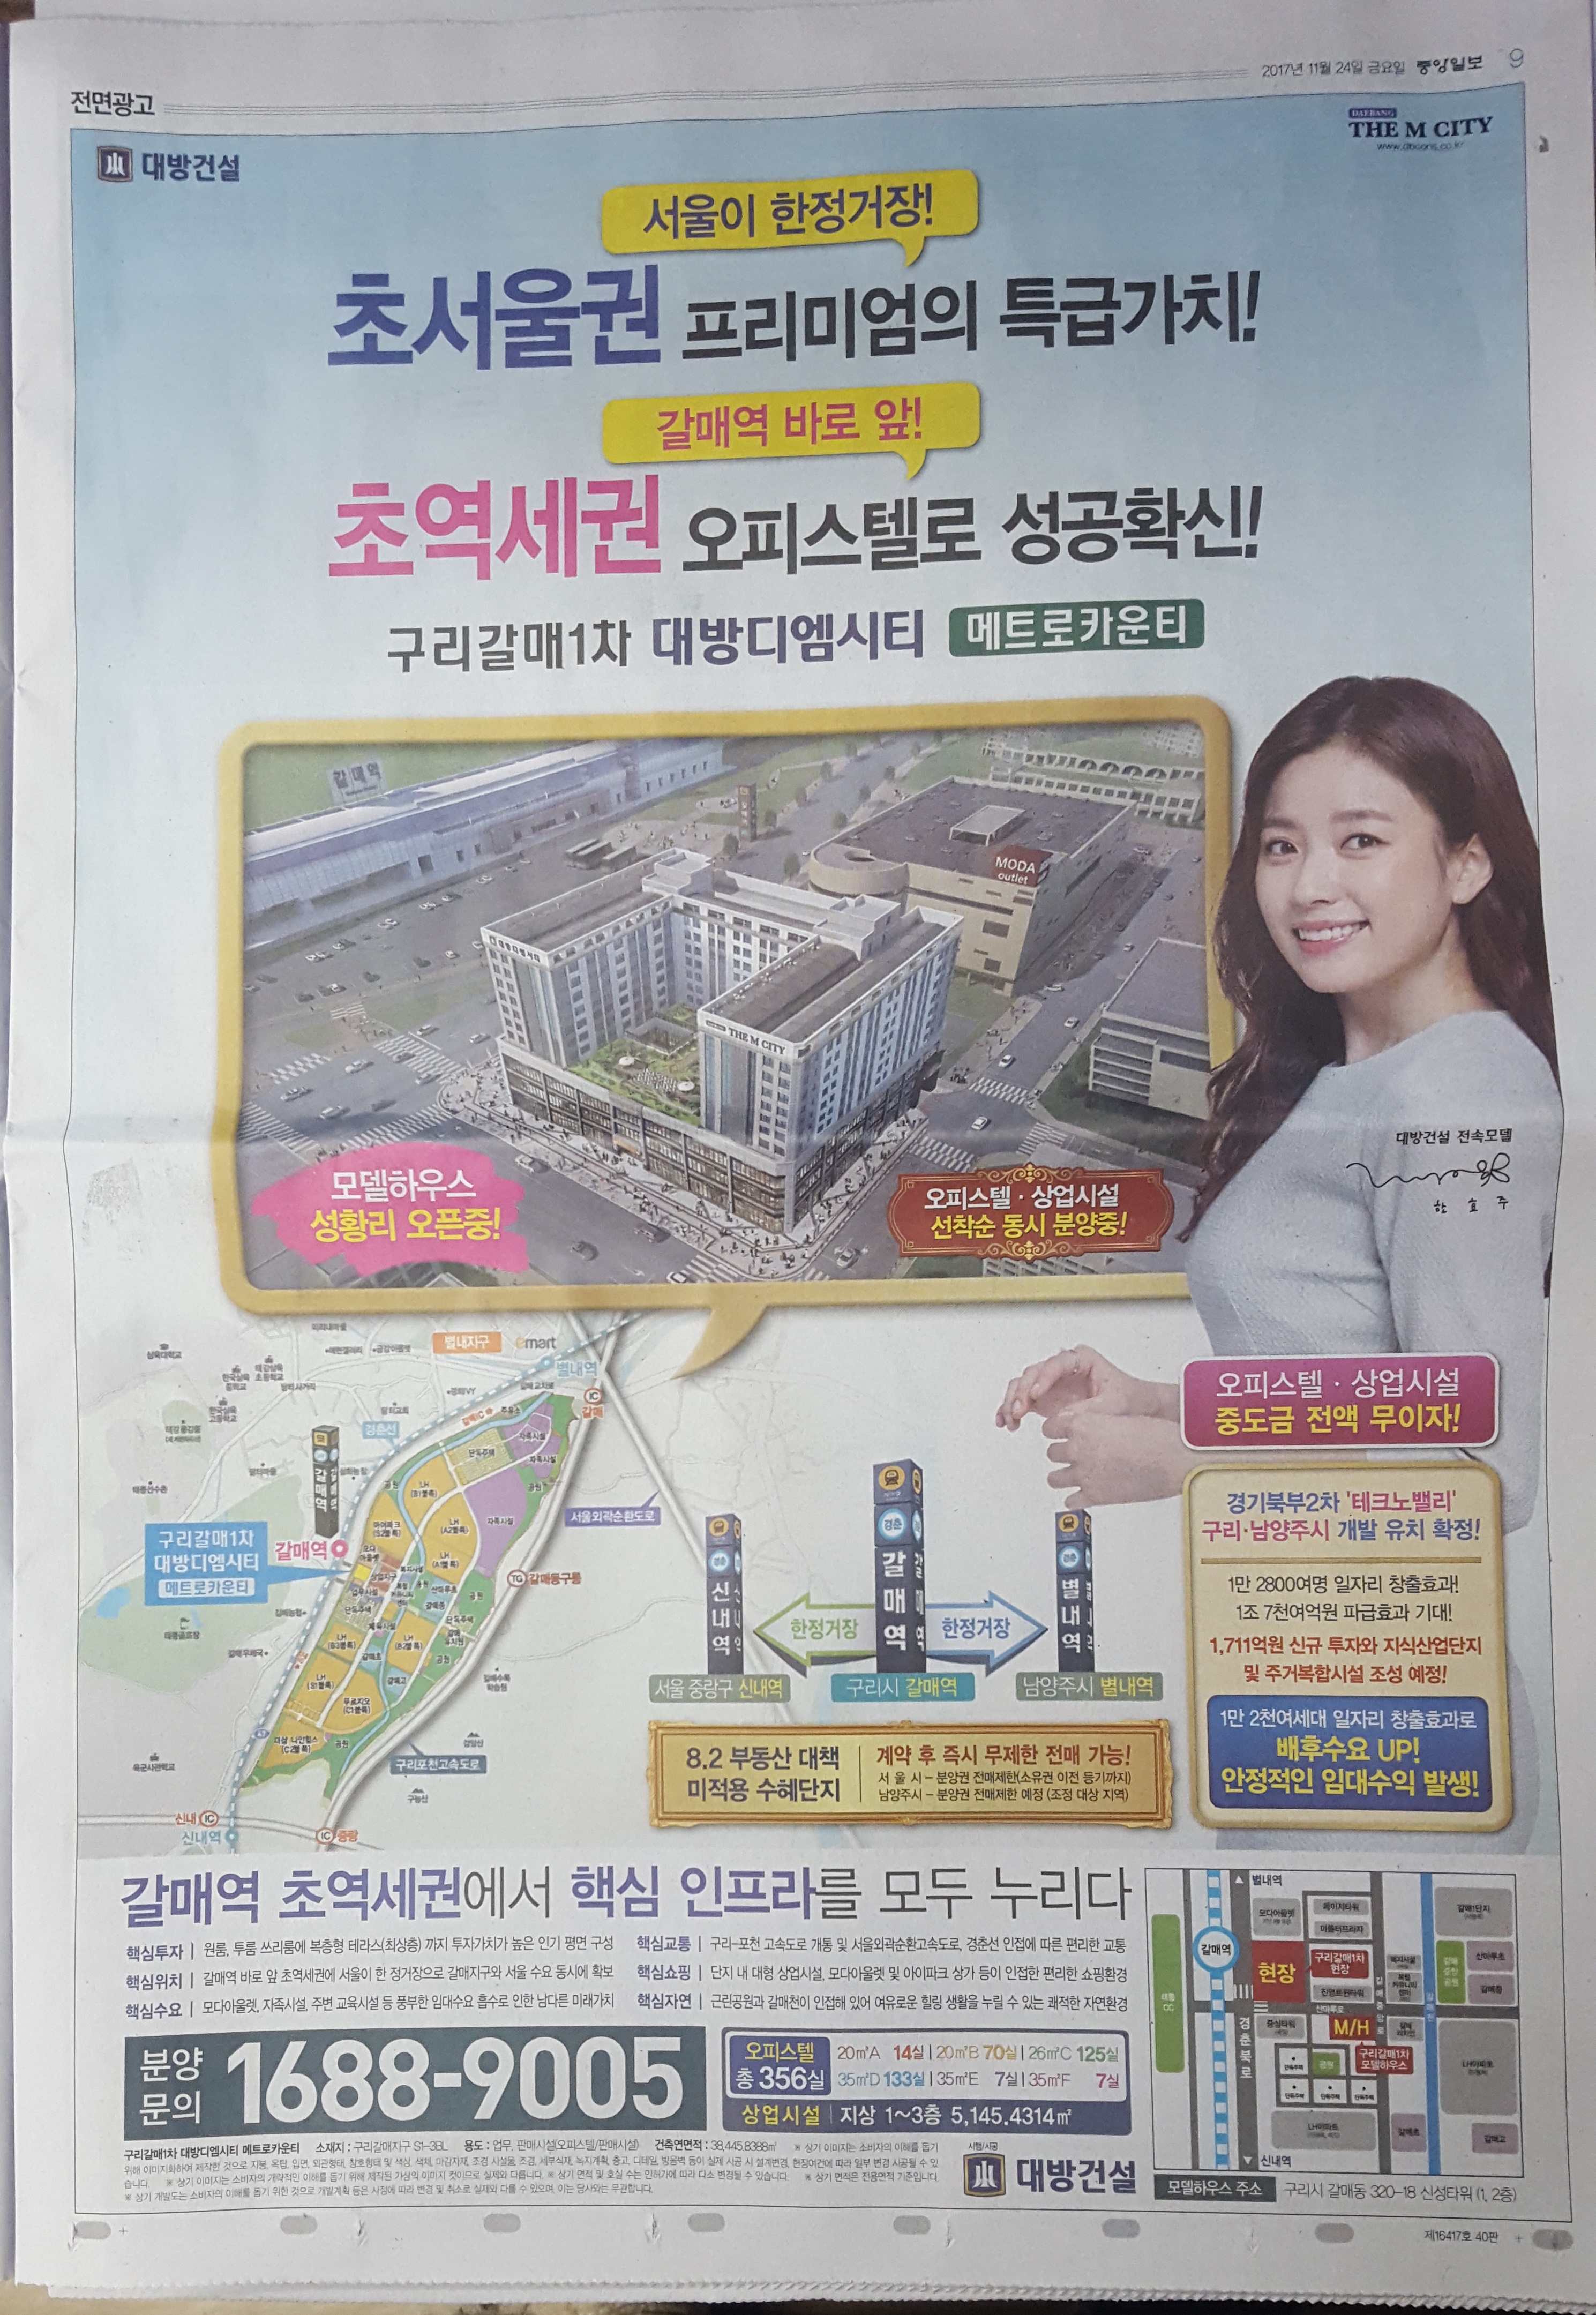 11월 24일 중앙일보 9 구리갈매 대방디엠시티 메트로카운티 - 전면.jpg